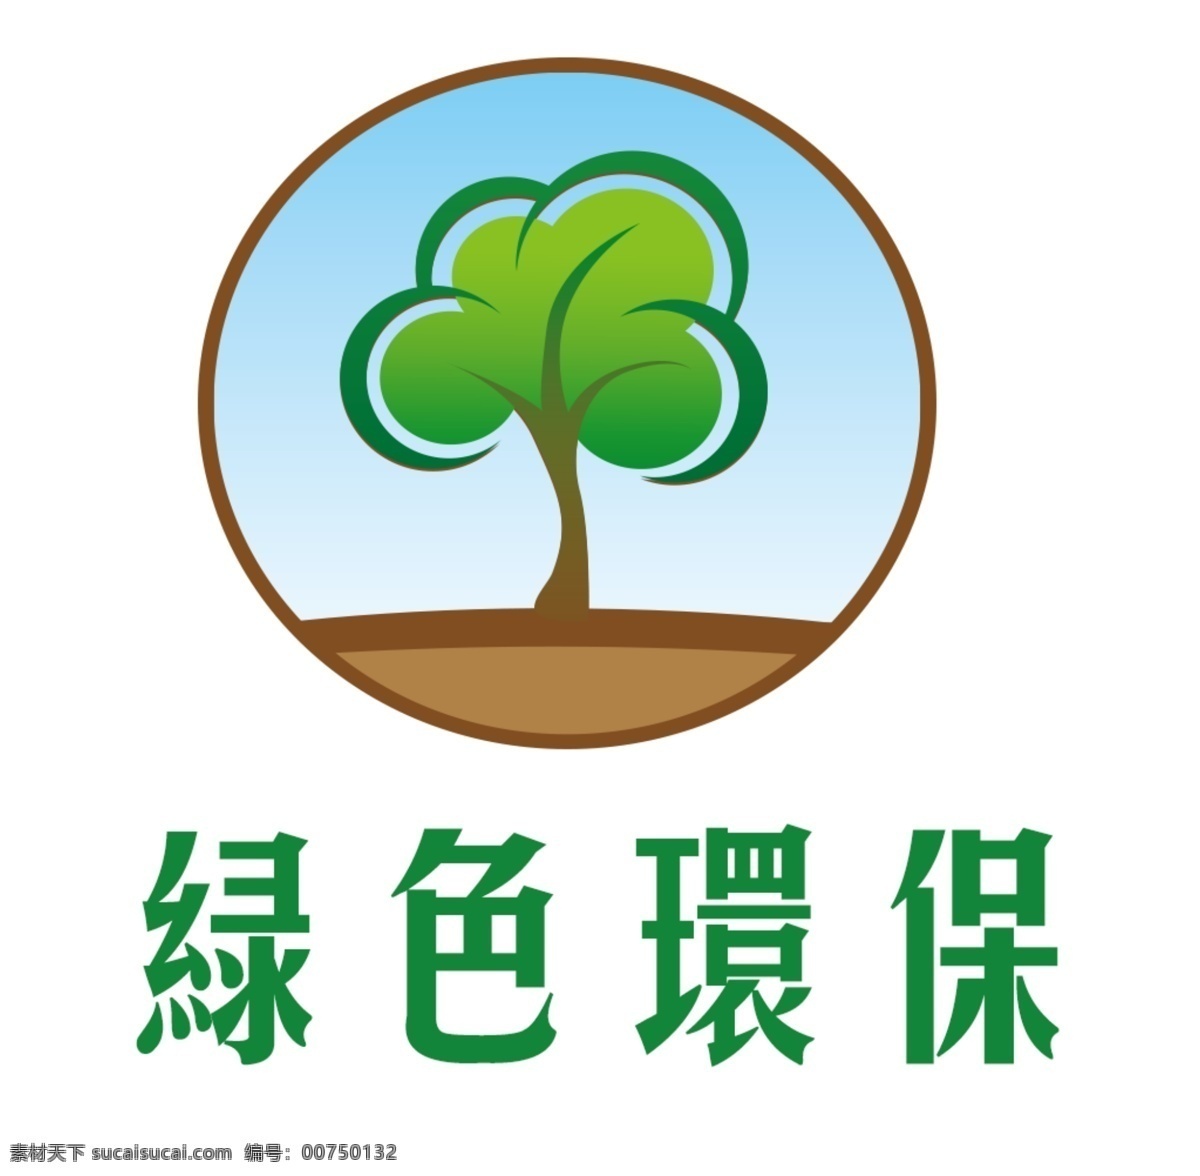 绿色环保 logo 绿色 环保 树 矢量图